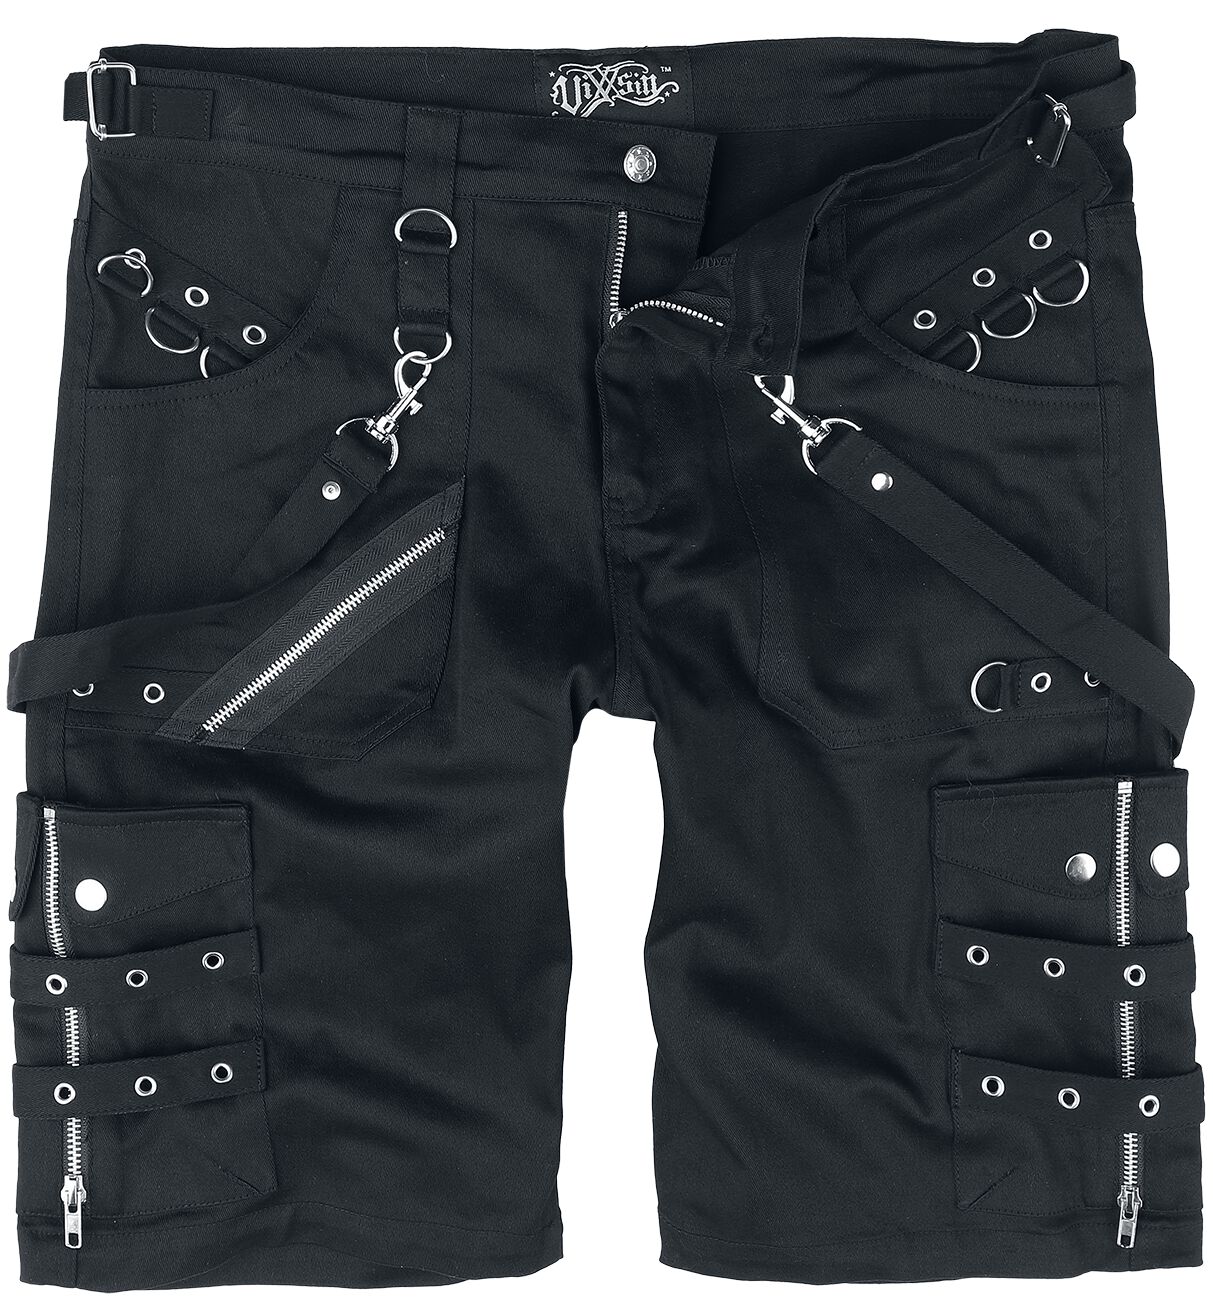 Vixxsin - Gothic Short - Edham Shorts - 30 bis 38 - für Männer - Größe 32 - schwarz